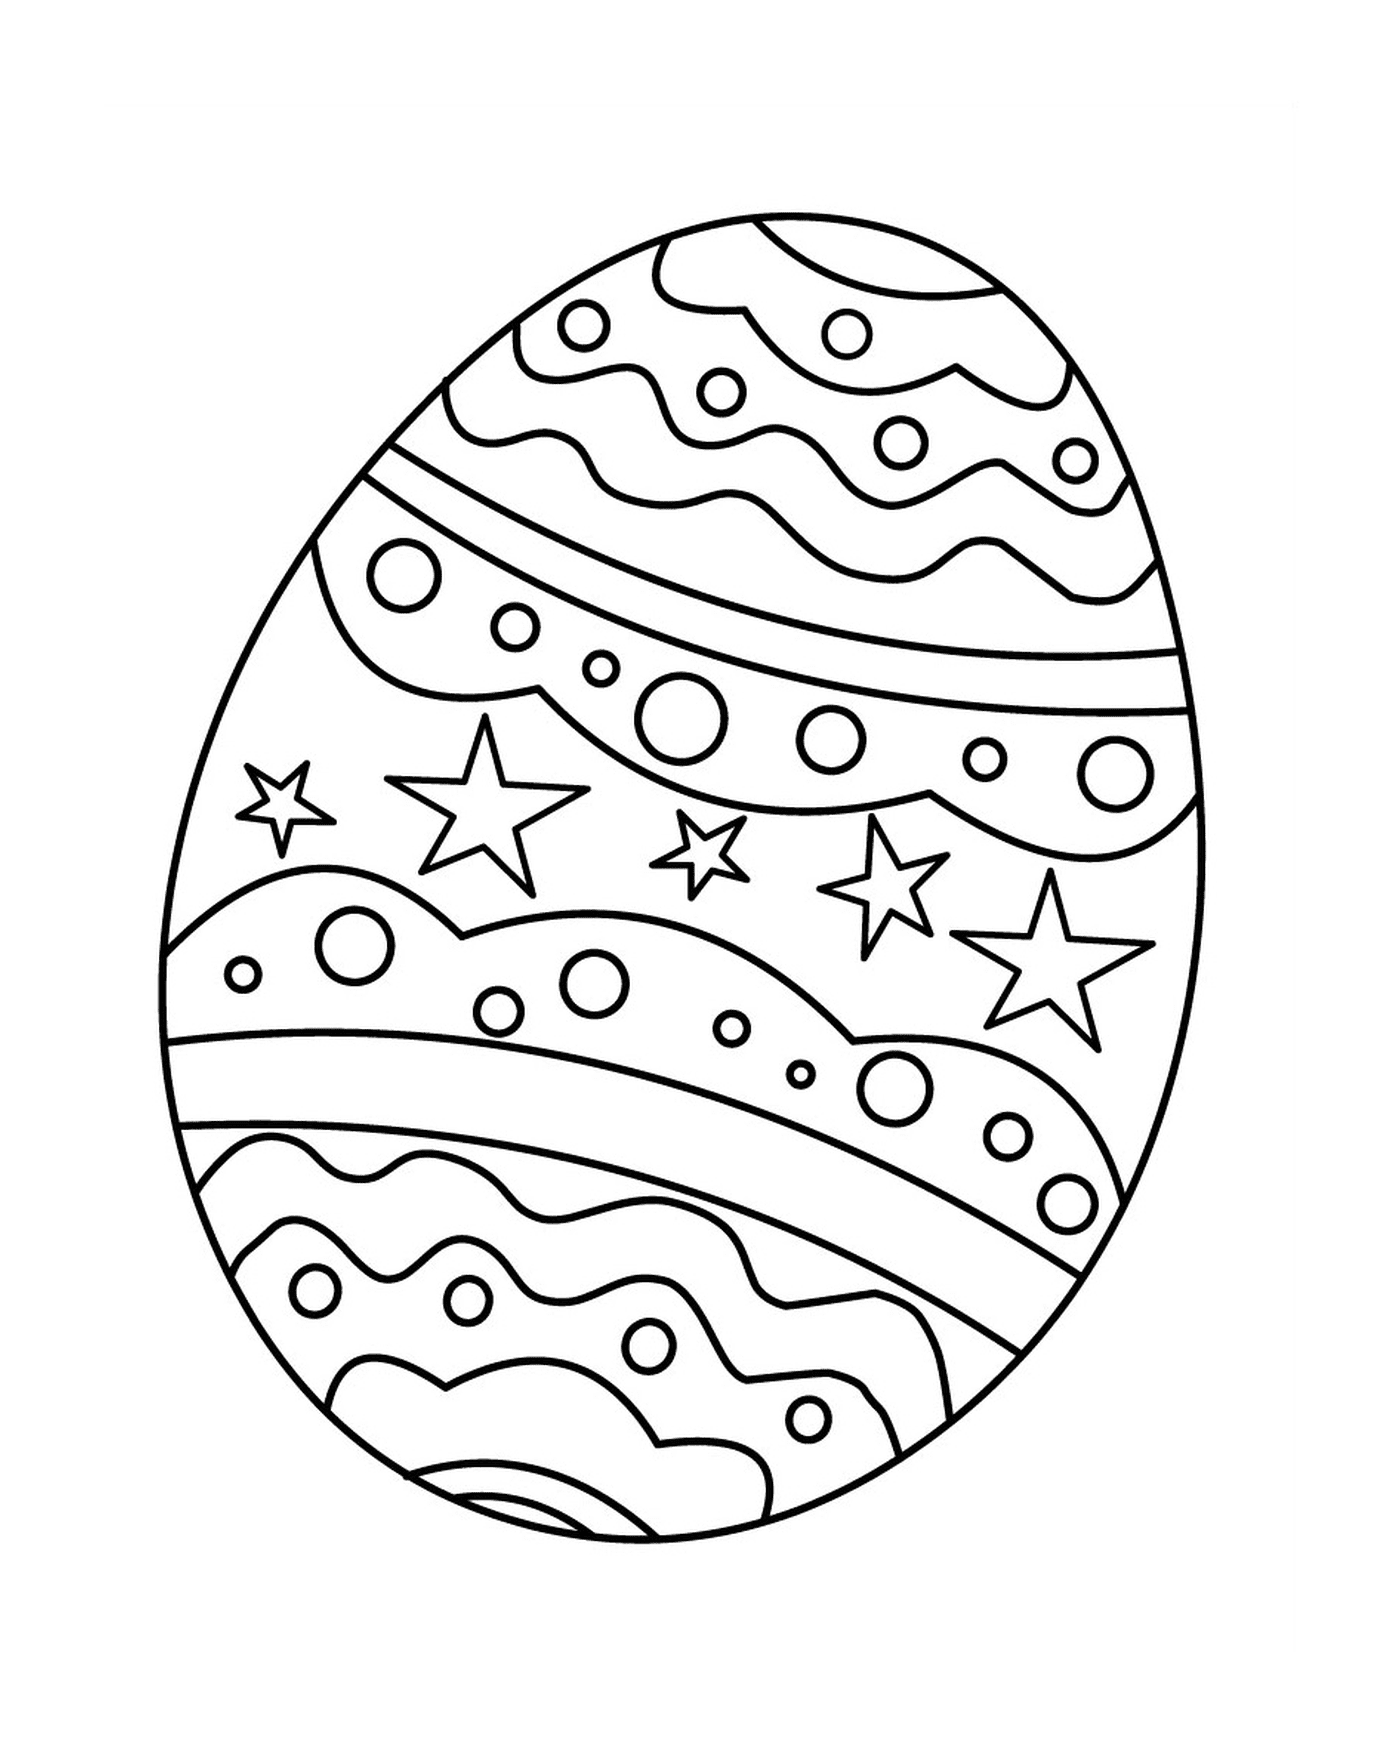  Uovo di Pasqua con stelle 